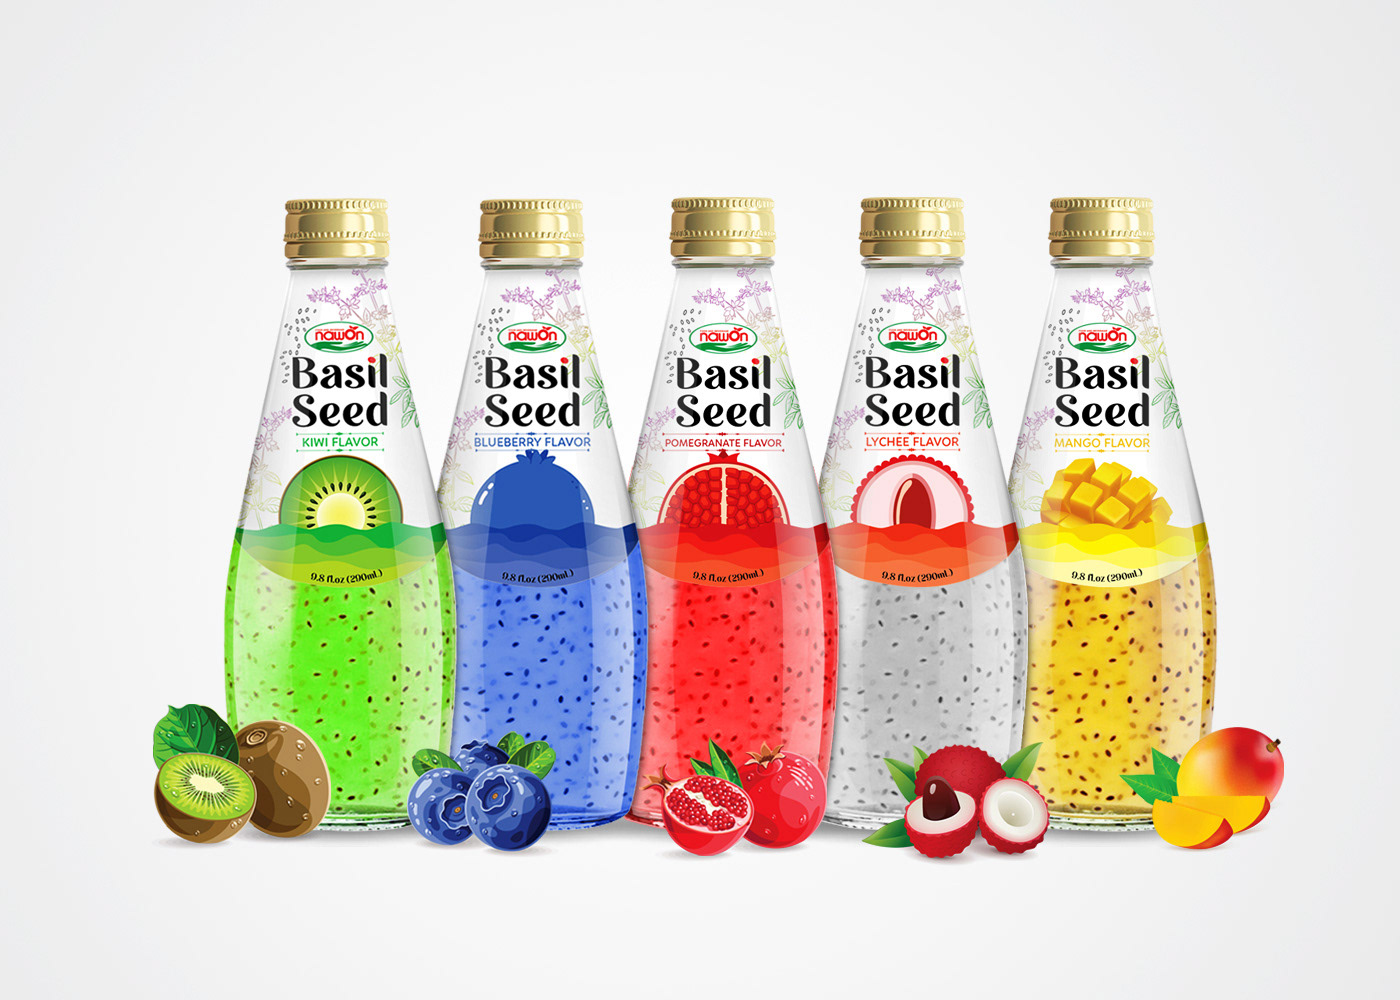 Basil Seeds Label drink Fruit juice juice drink Label label design Mockup Packaging product packaging